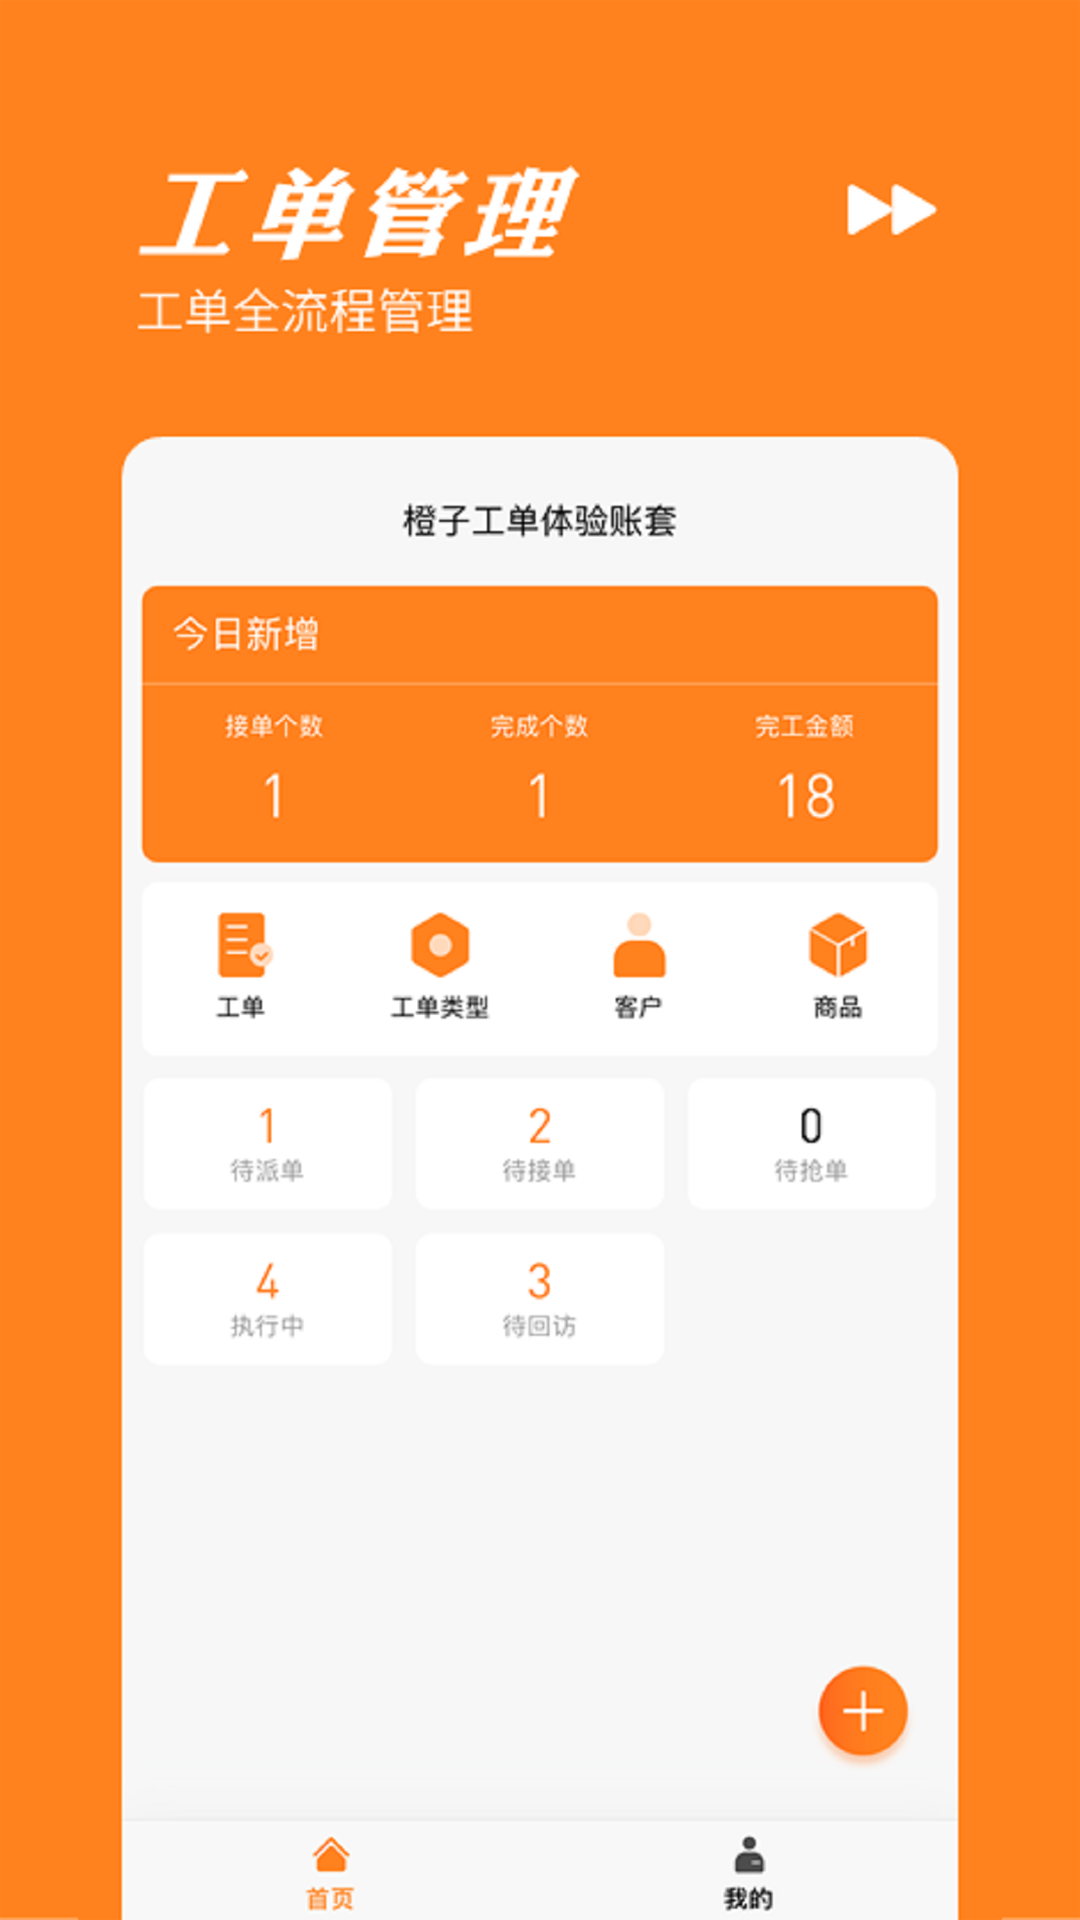 橙子工单接单服务app安卓版